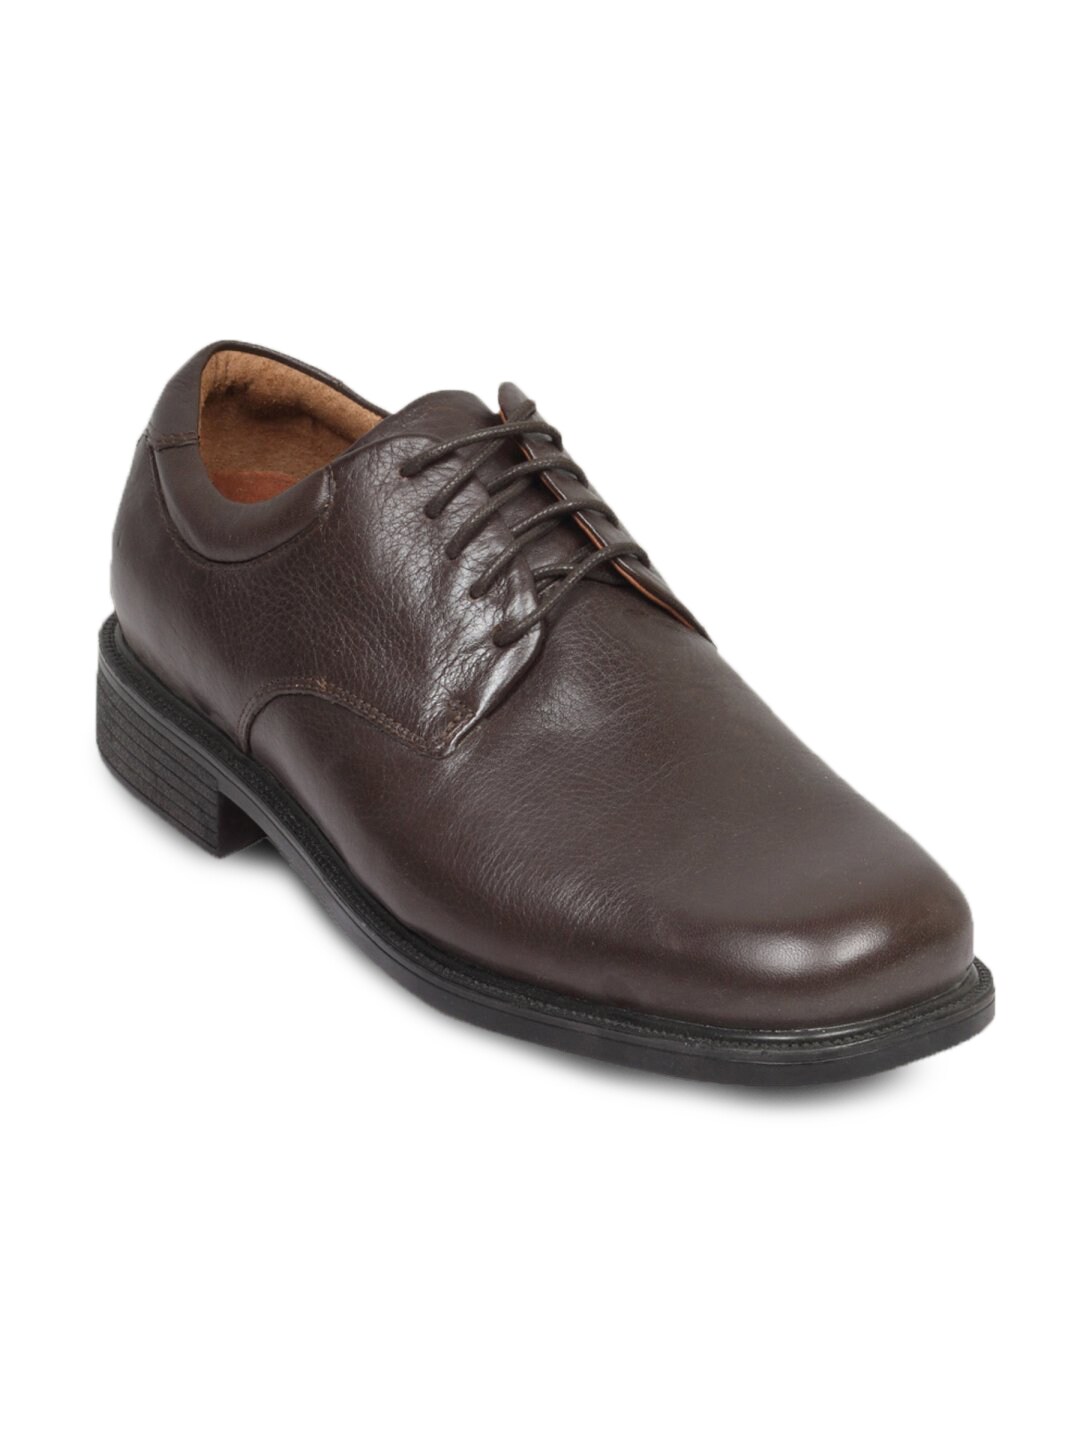 Rockport Men's Carnforth Soft Brown Shoe